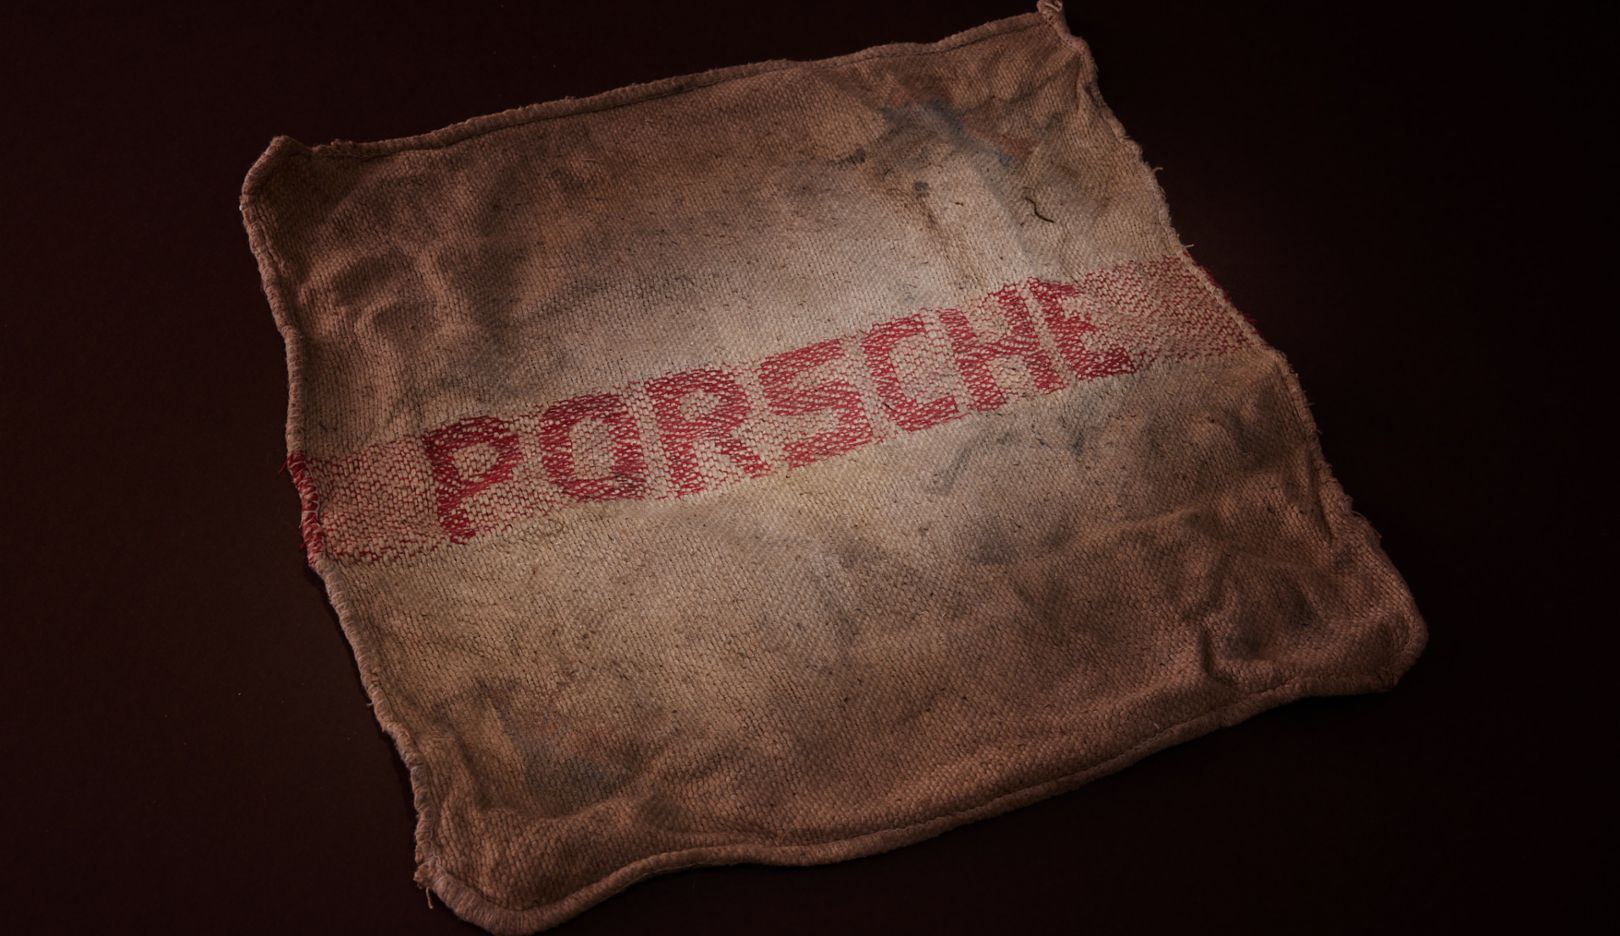 Più di 50 anni dopo, il panno della Porsche profuma ancora di olio.